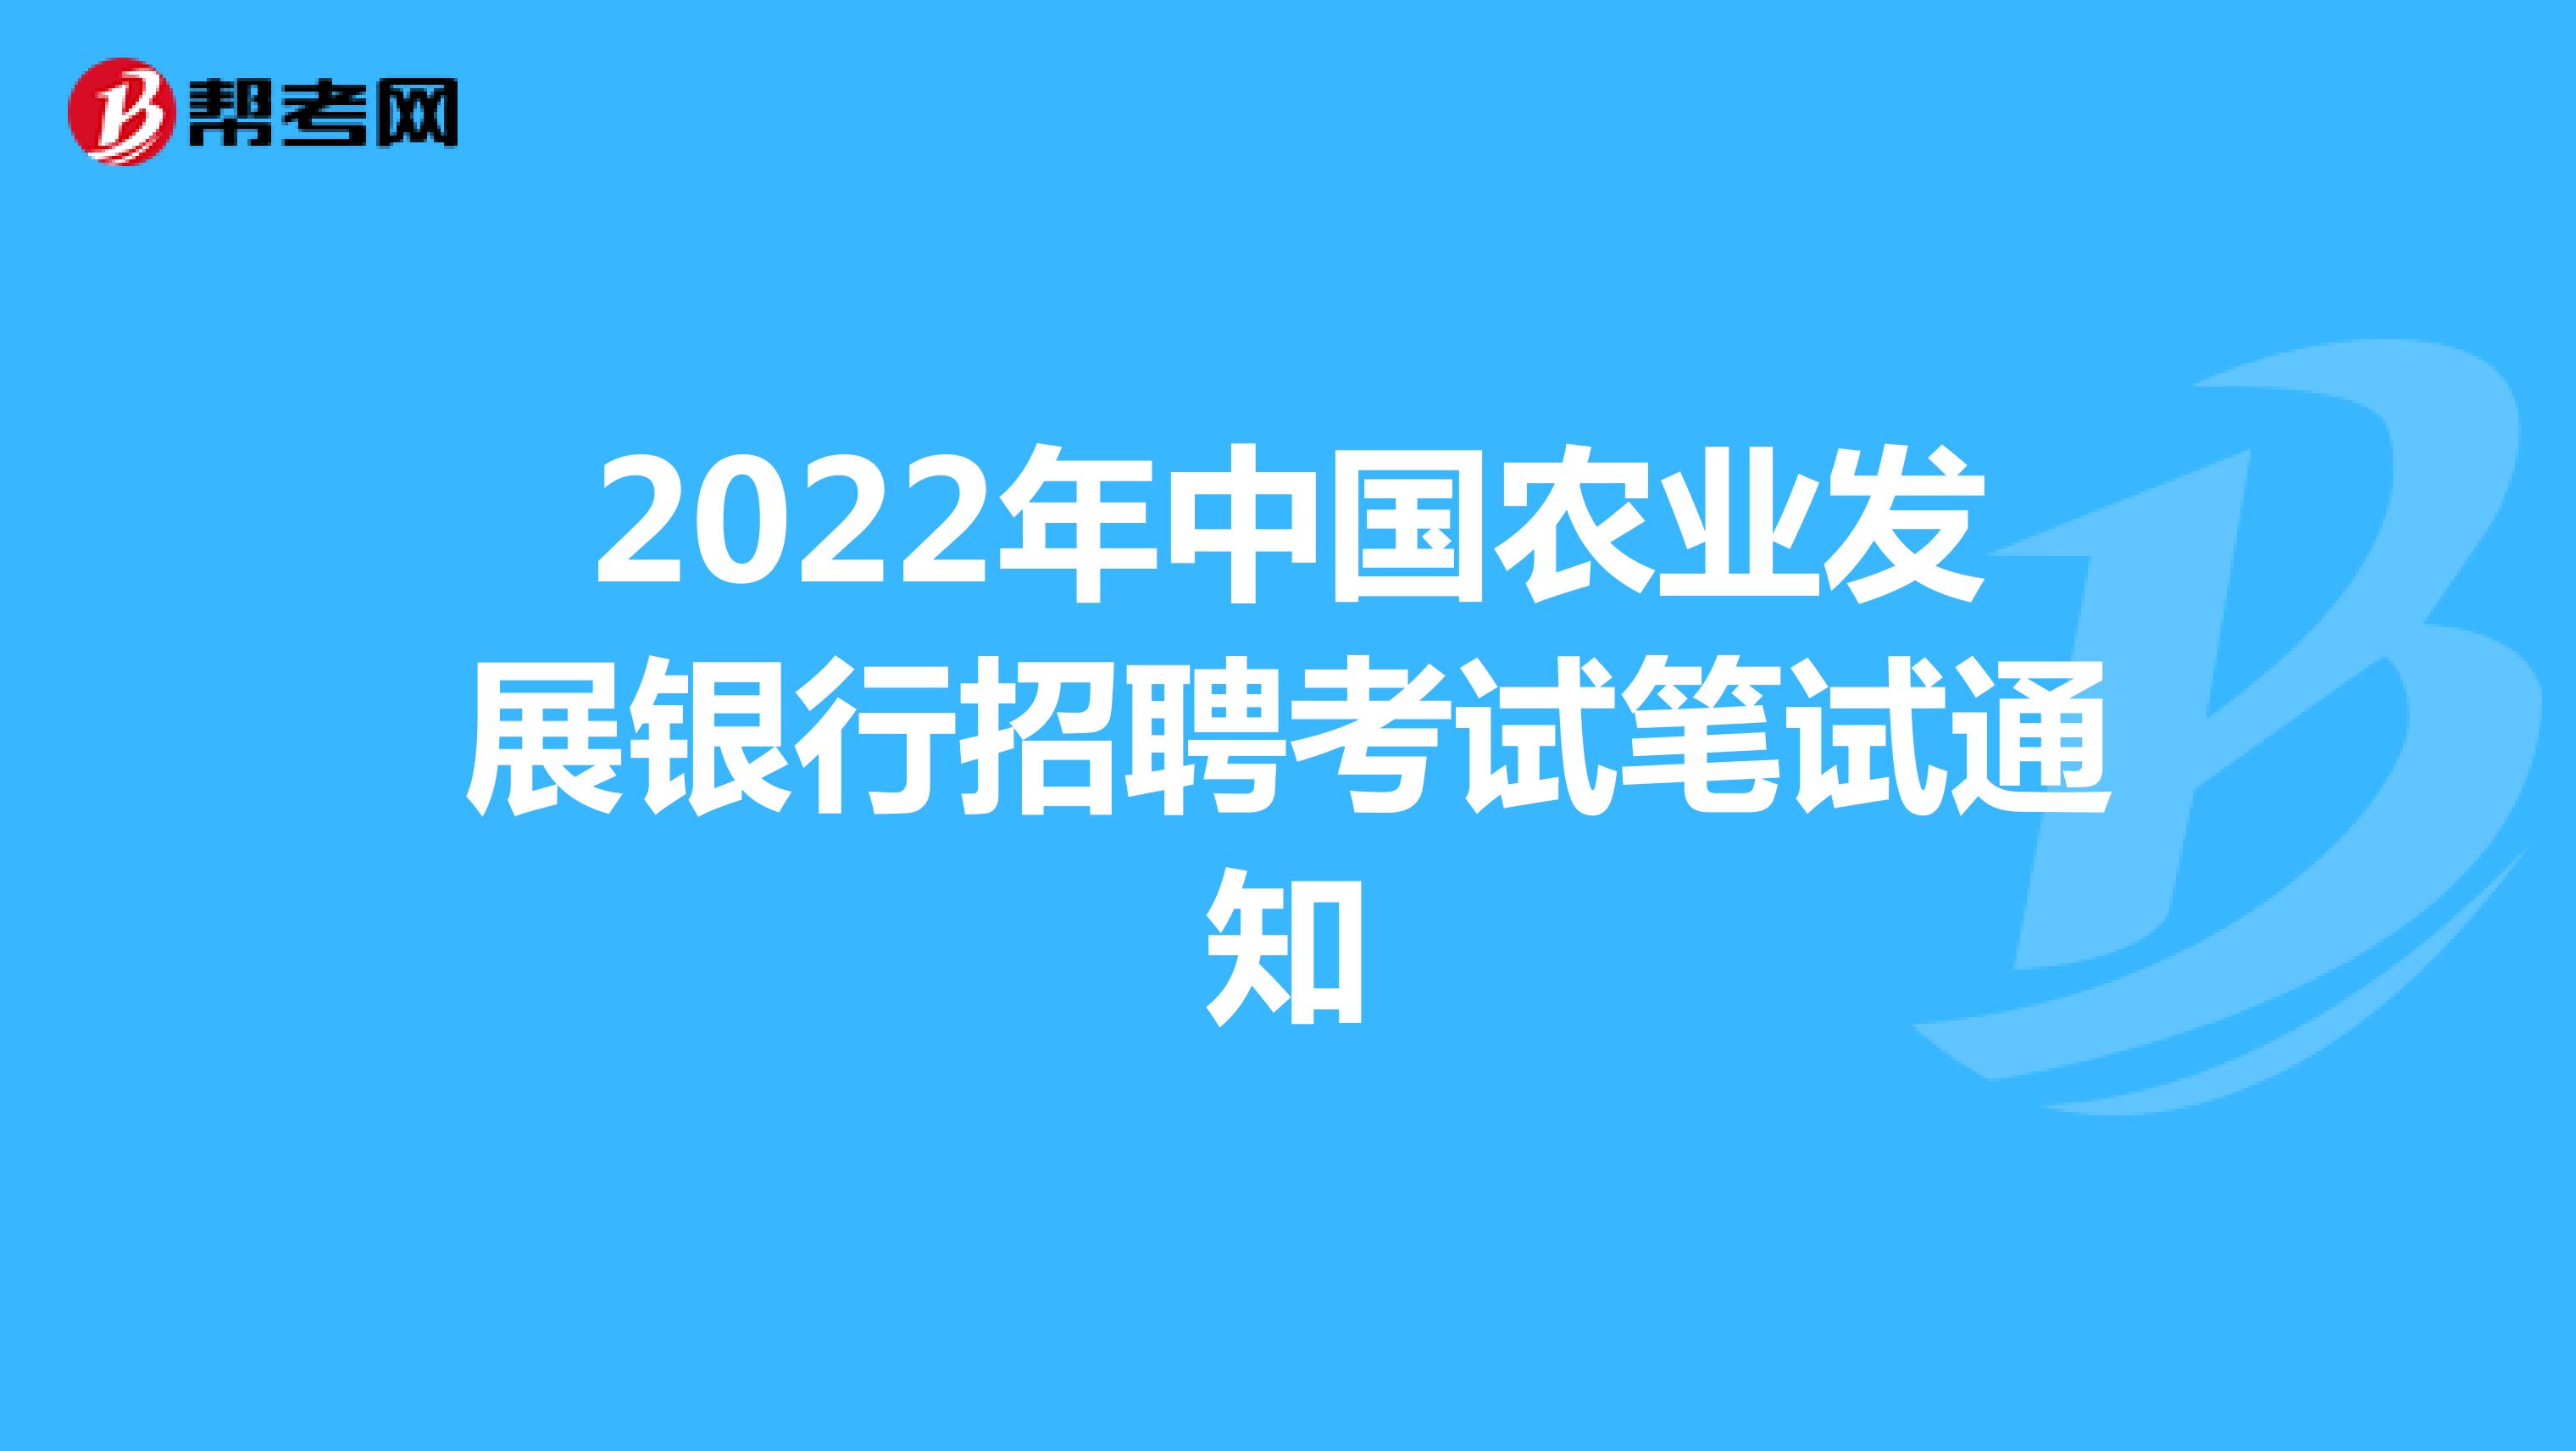 2022年中國農業發展銀行招聘考試筆試通知